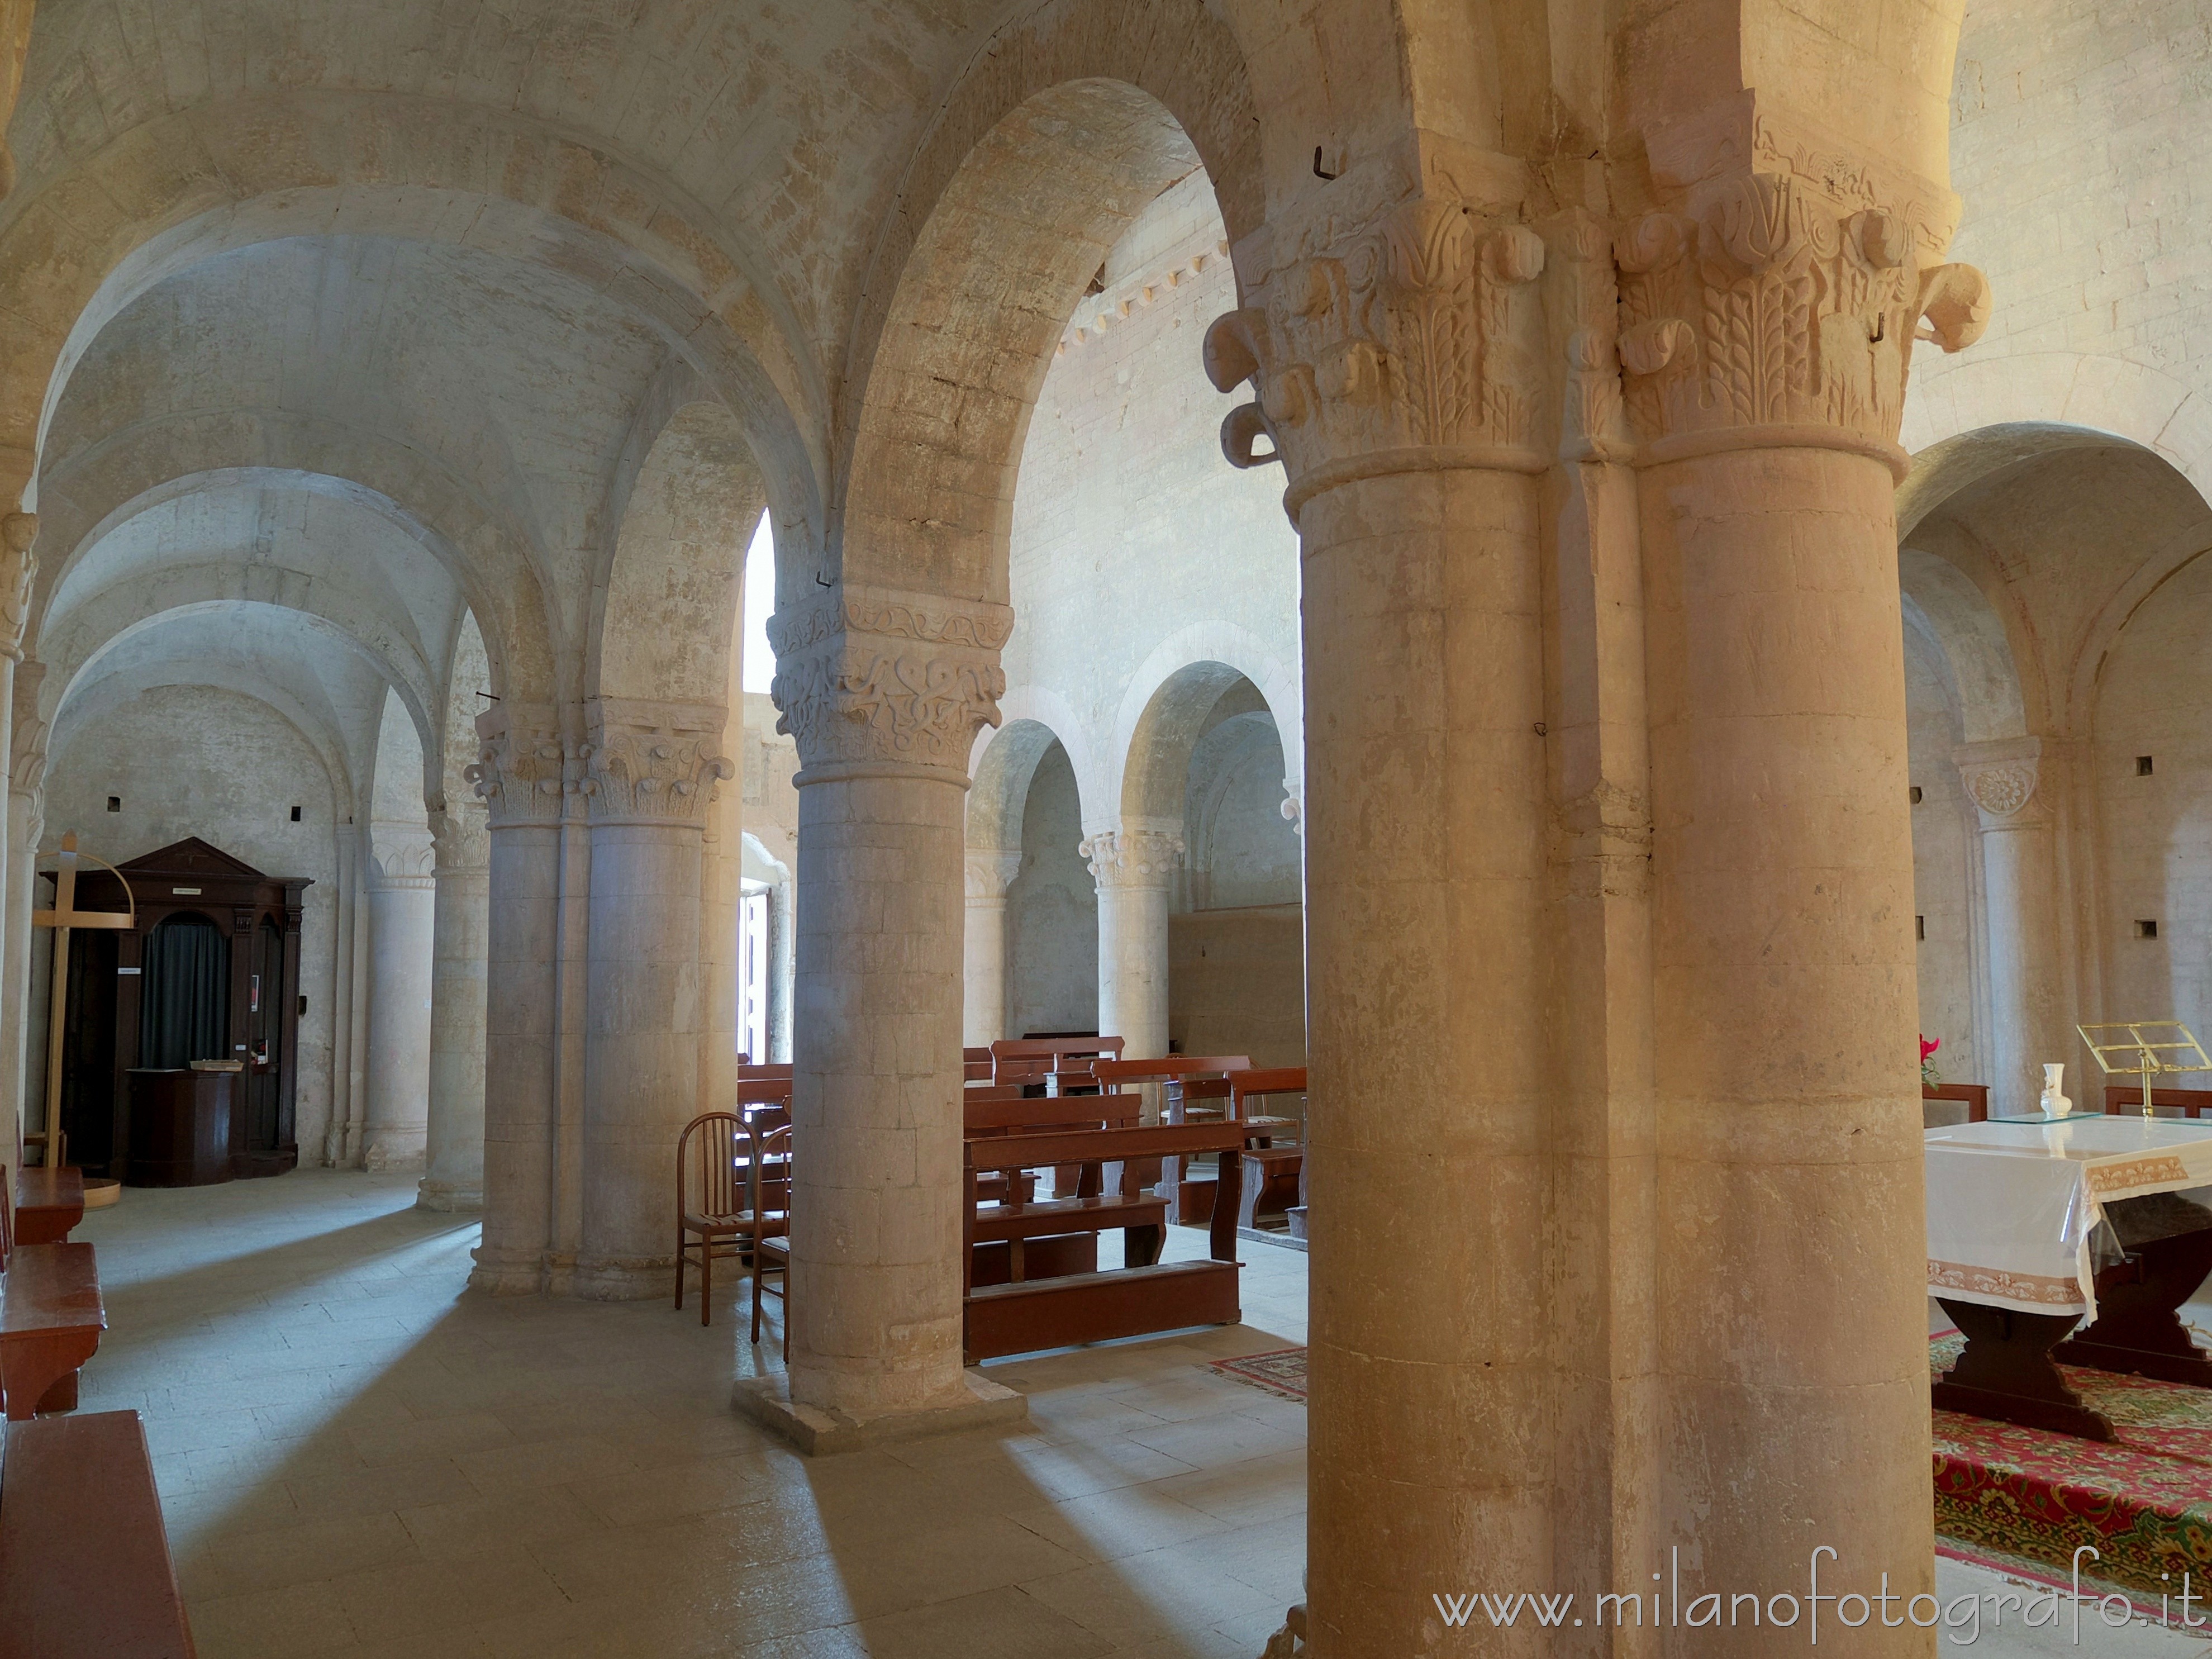 Sirolo (Ancona, Italy): Play of light inside St. Peter's Abbey - Sirolo (Ancona, Italy)